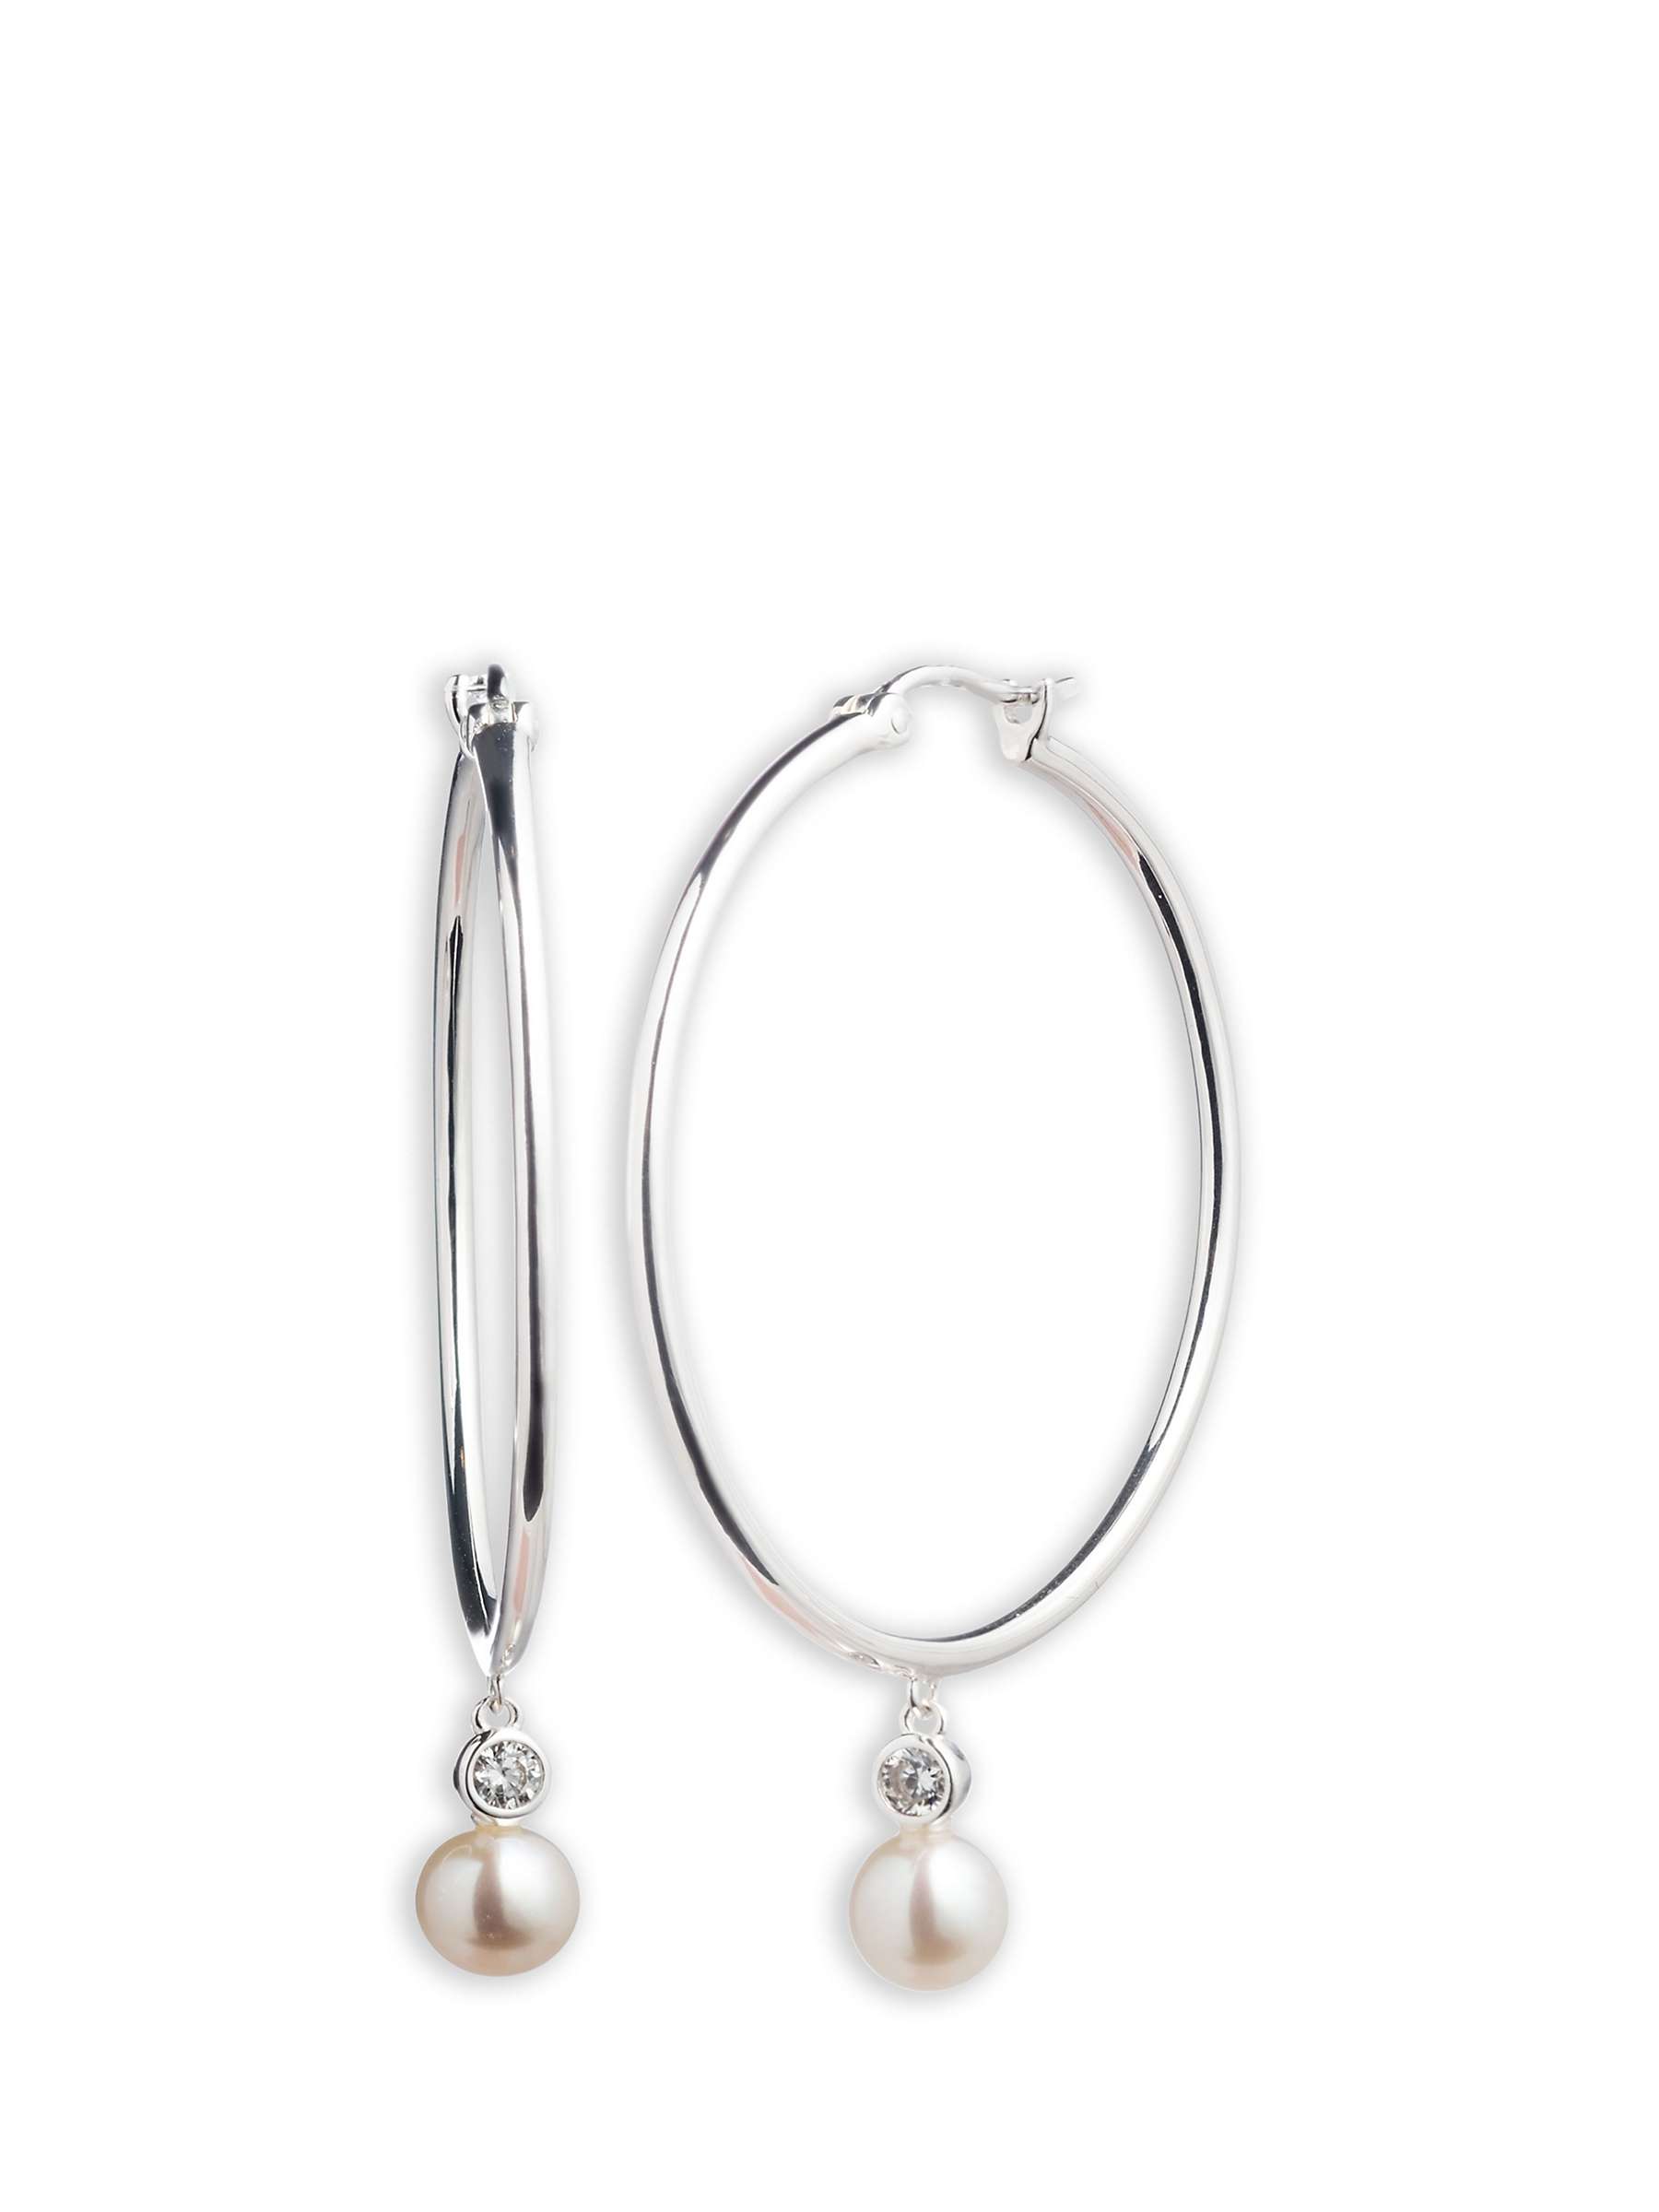 Buy Lauren Ralph Lauren Sterling Silver Pearl Hoop Earrings, Silver/White Online at johnlewis.com